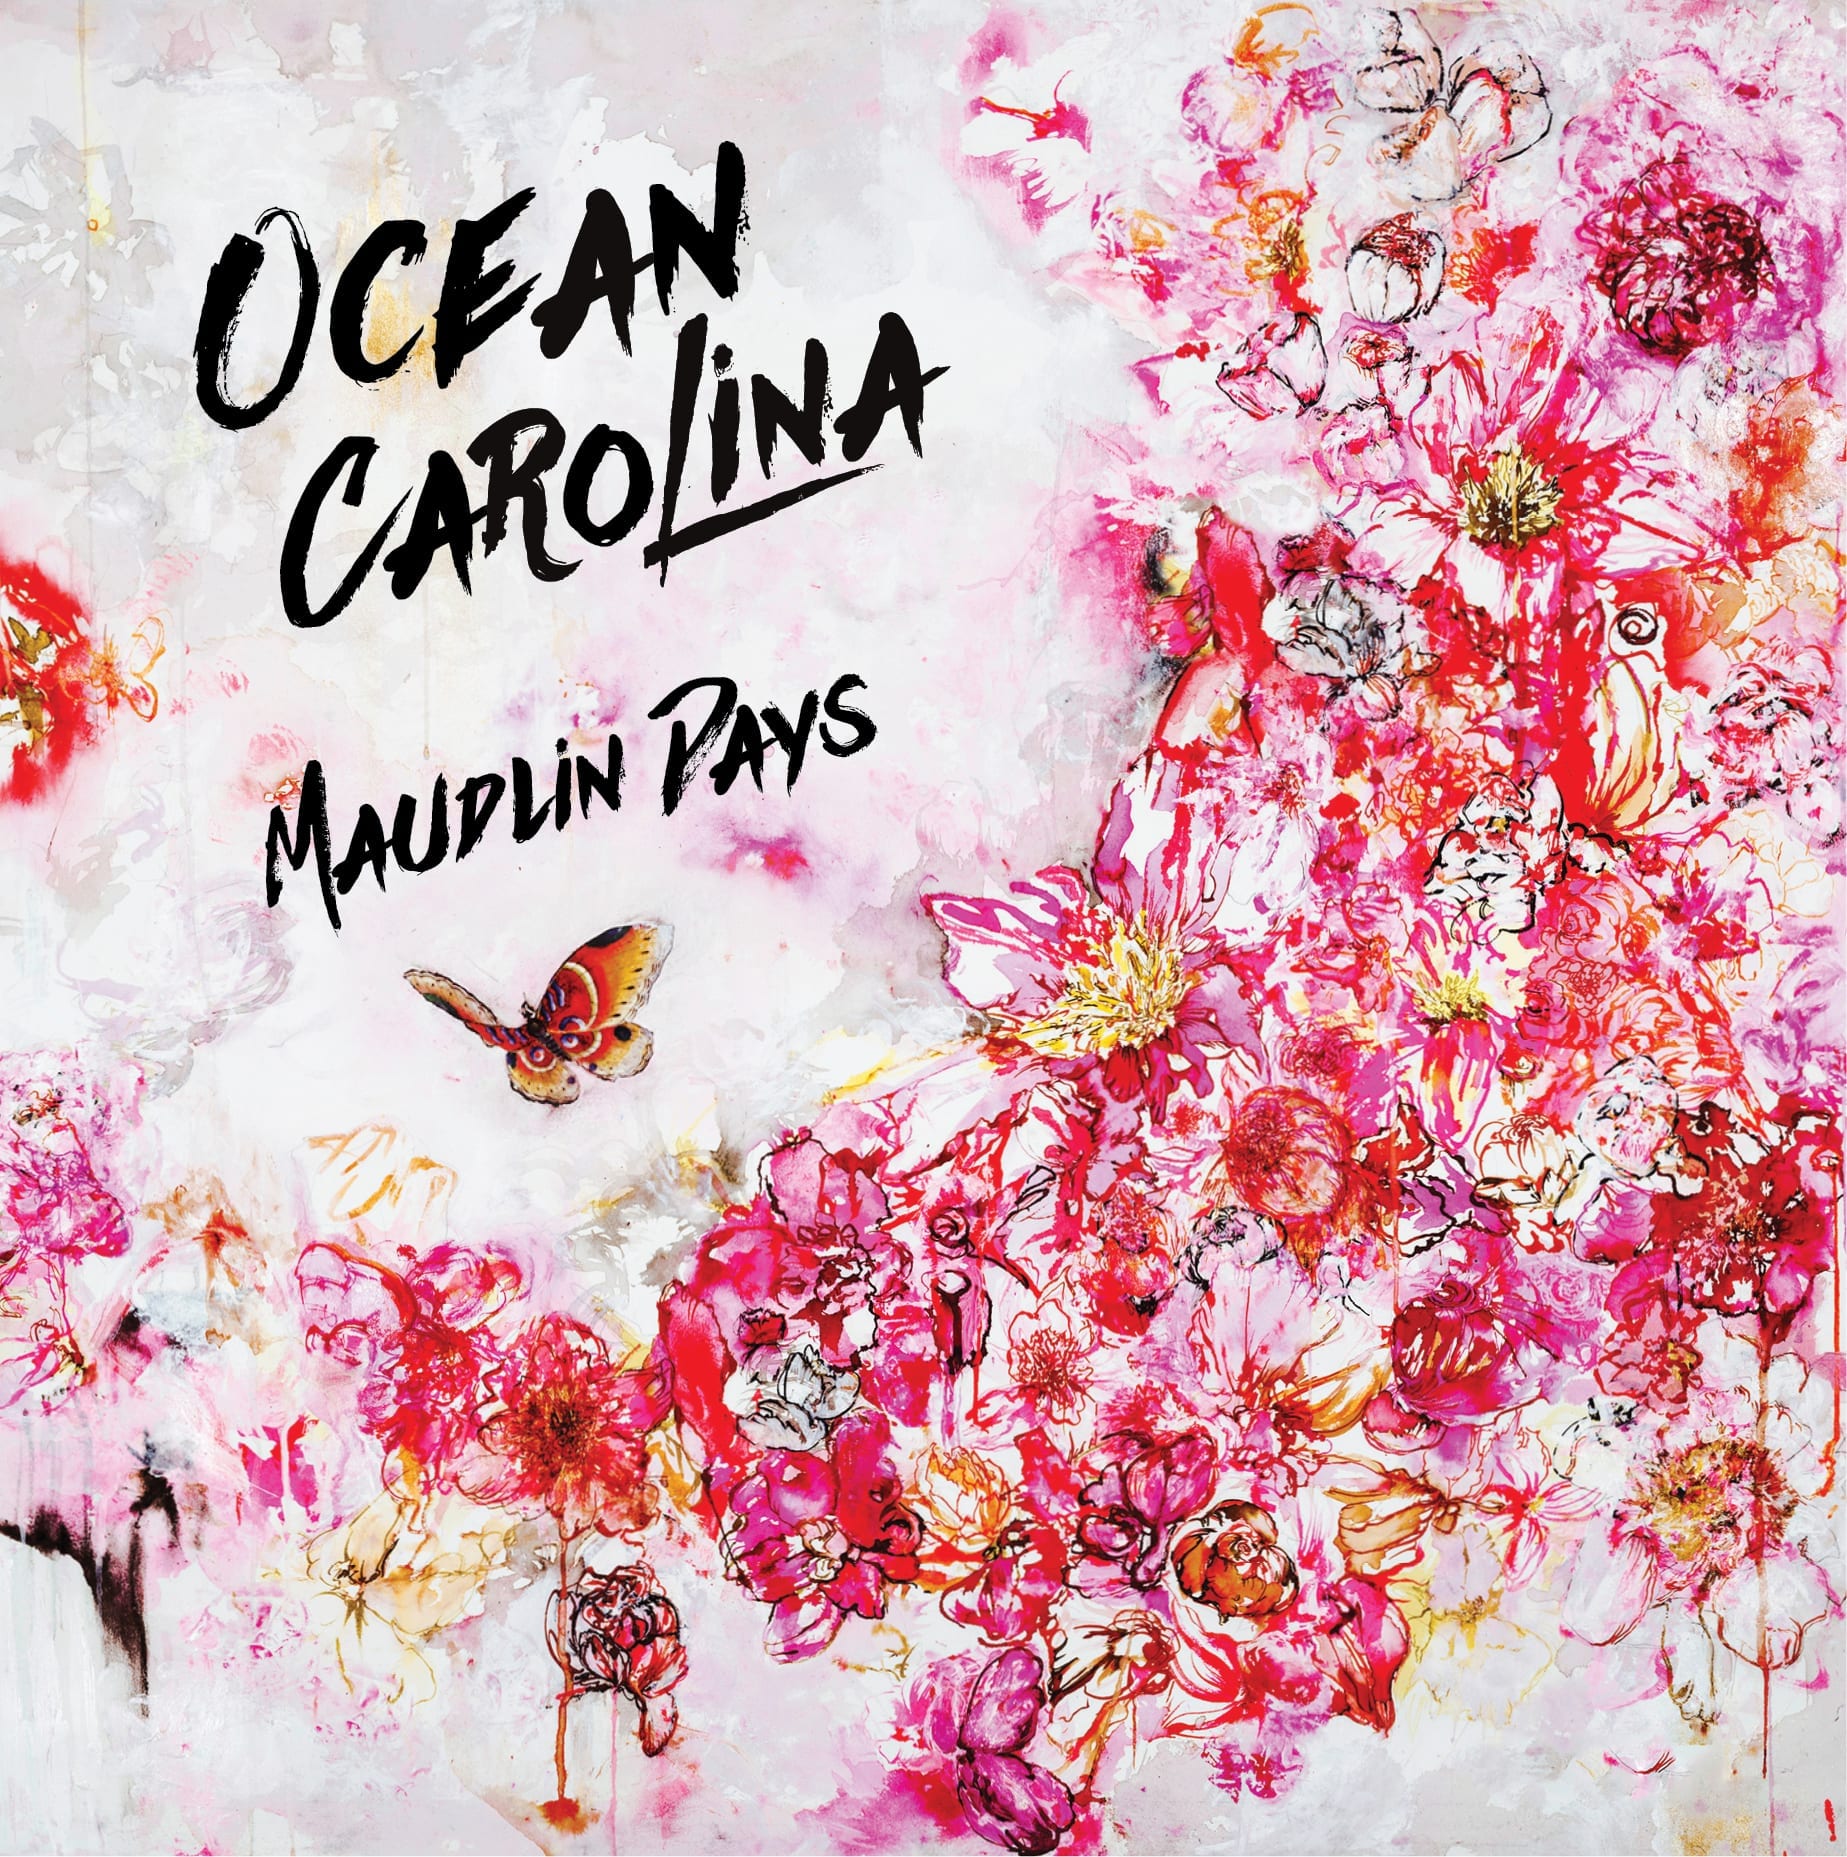 Album Review: Maudlin Days // Ocean Carolina